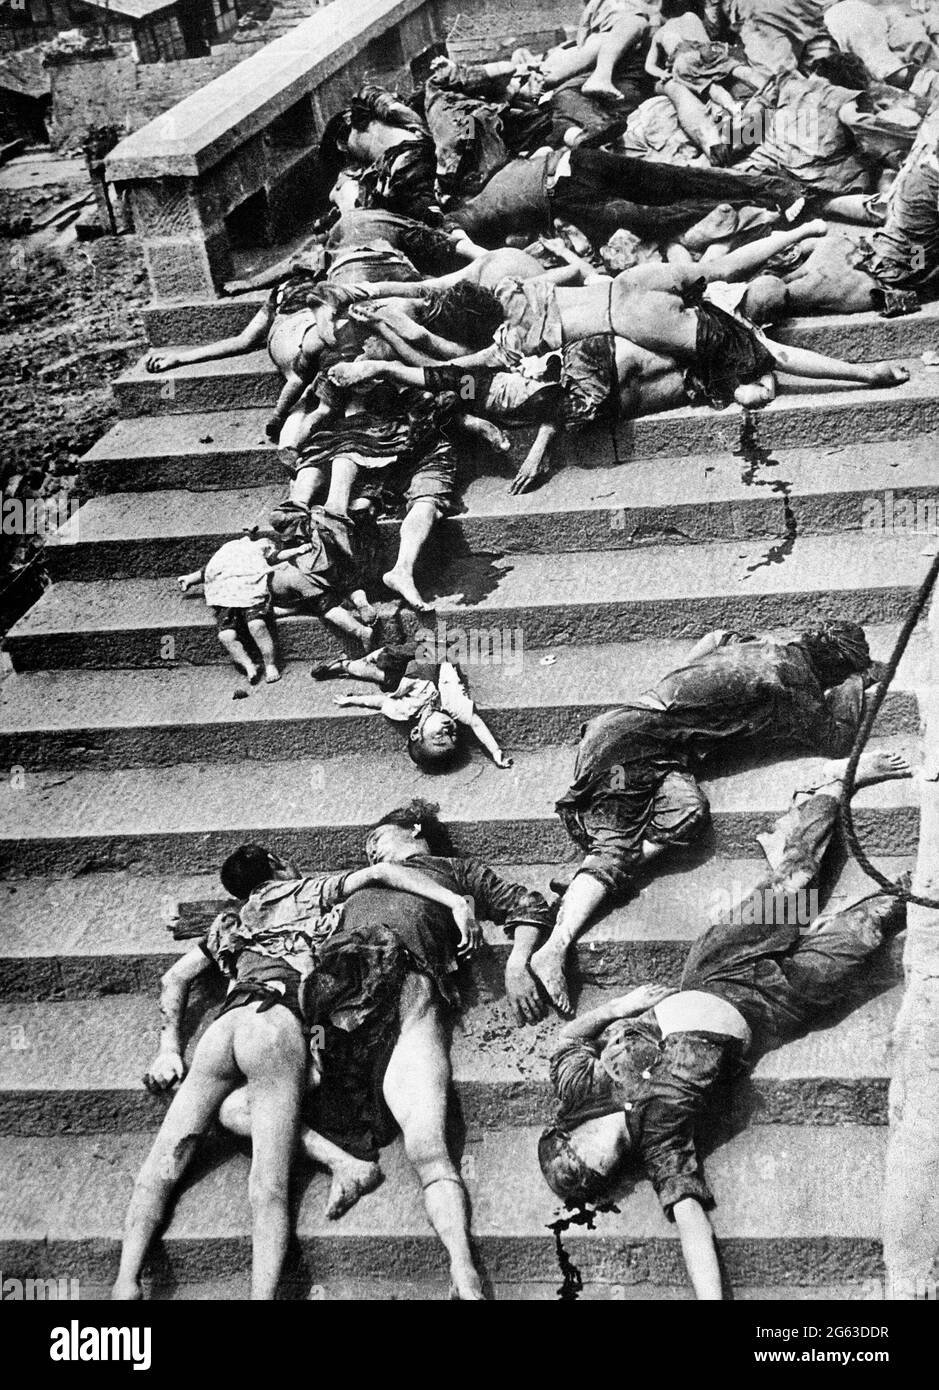 Victimes d'un raid aérien japonais, au cours duquel 4,000 personnes ont été piétinées ou suffoquées à mort pour tenter de retourner dans des abris. Chungking, Chine, 5 juin 1941 Banque D'Images